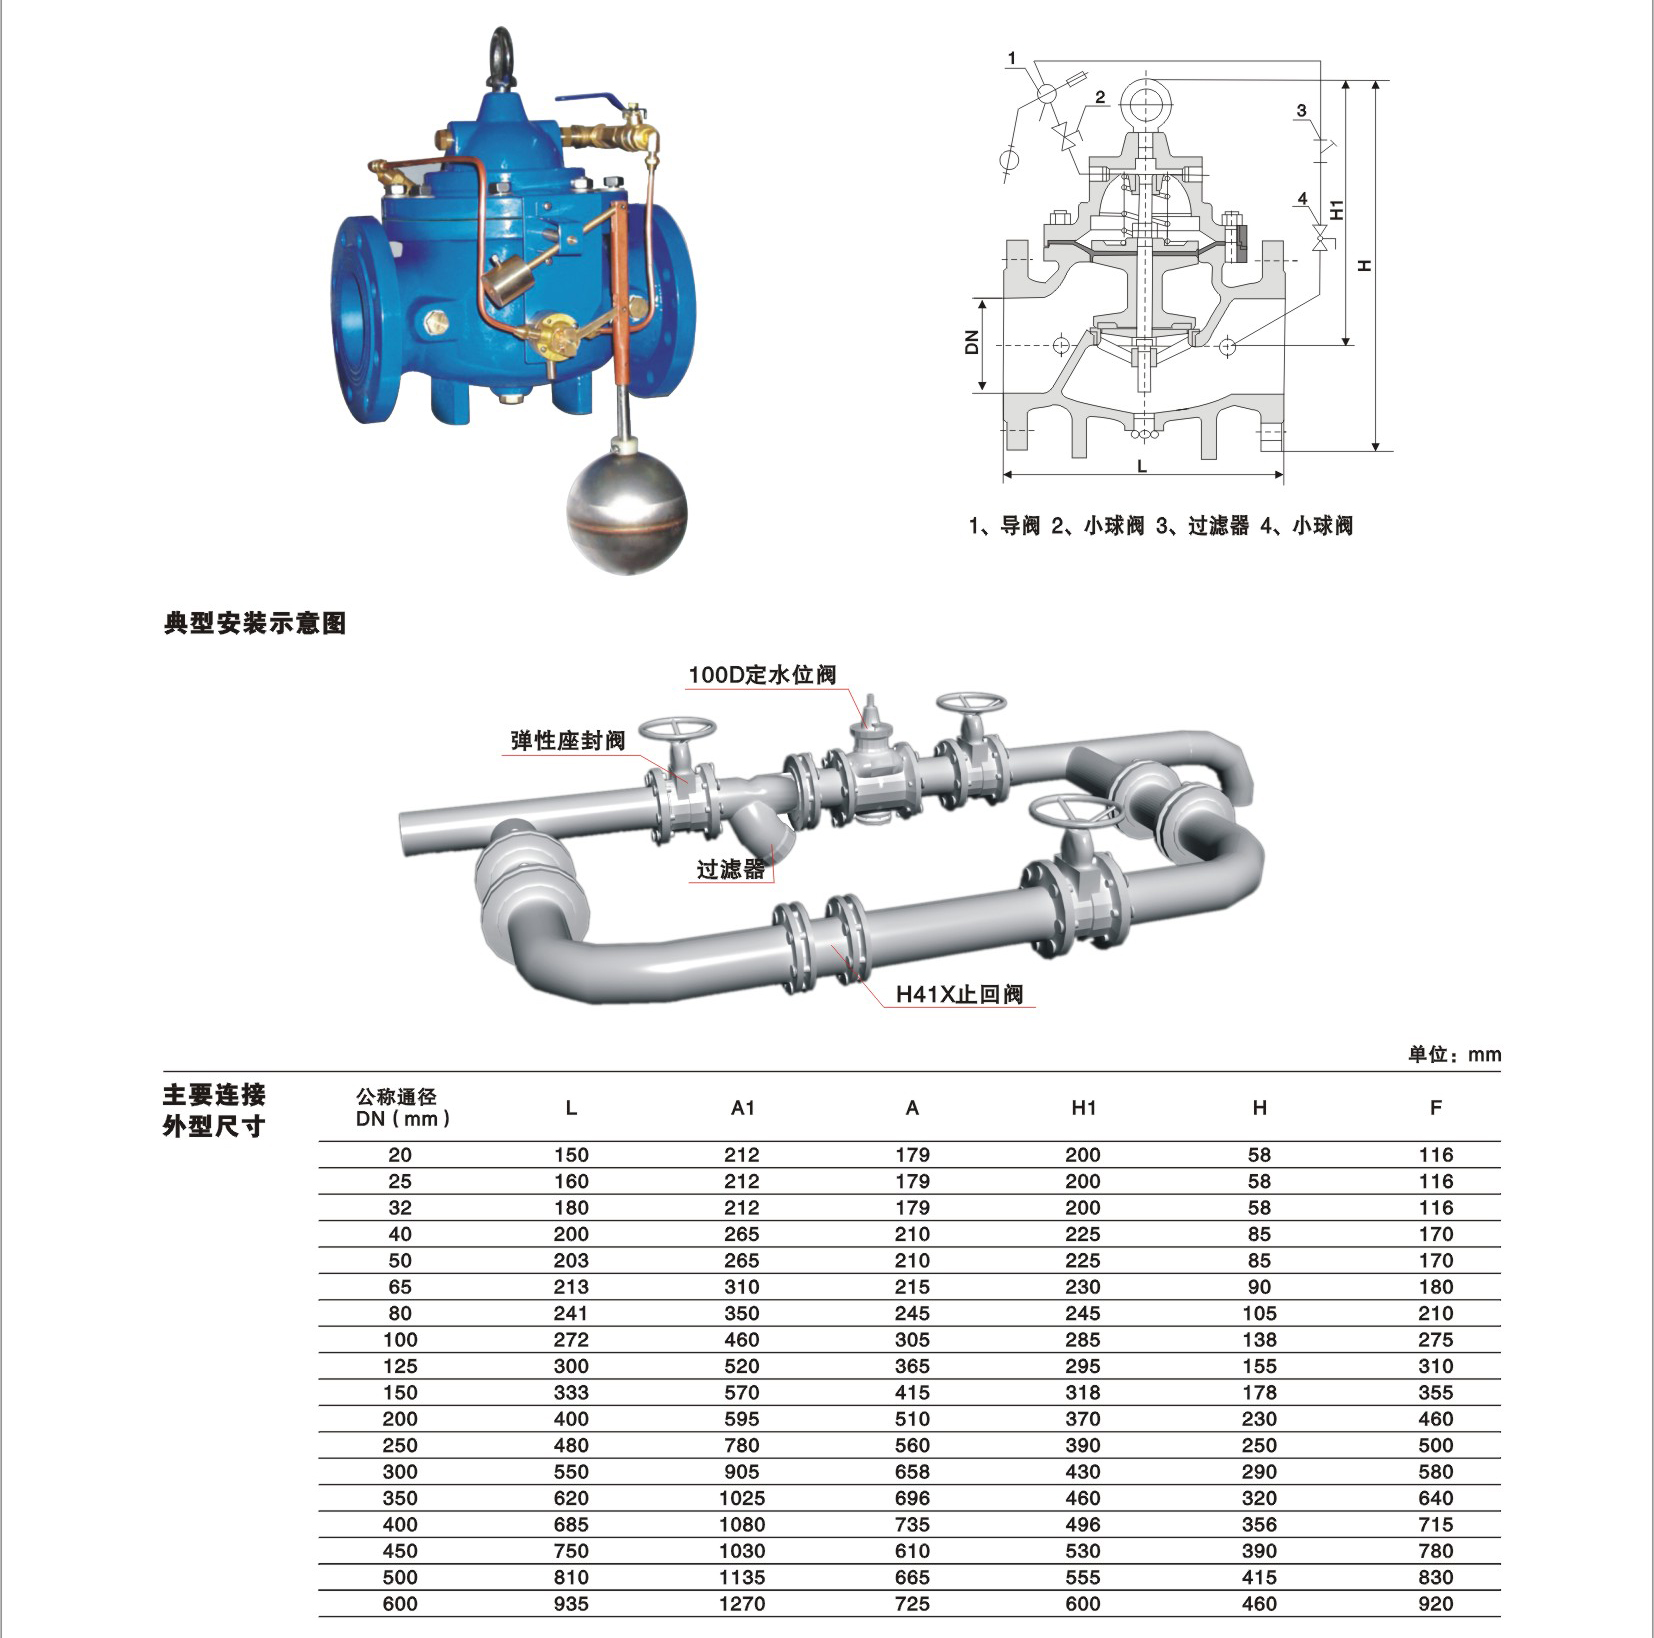 2019 中国新デザイン中国新デザイン水流制御用機械調整可能なミニフロートボールバルブ